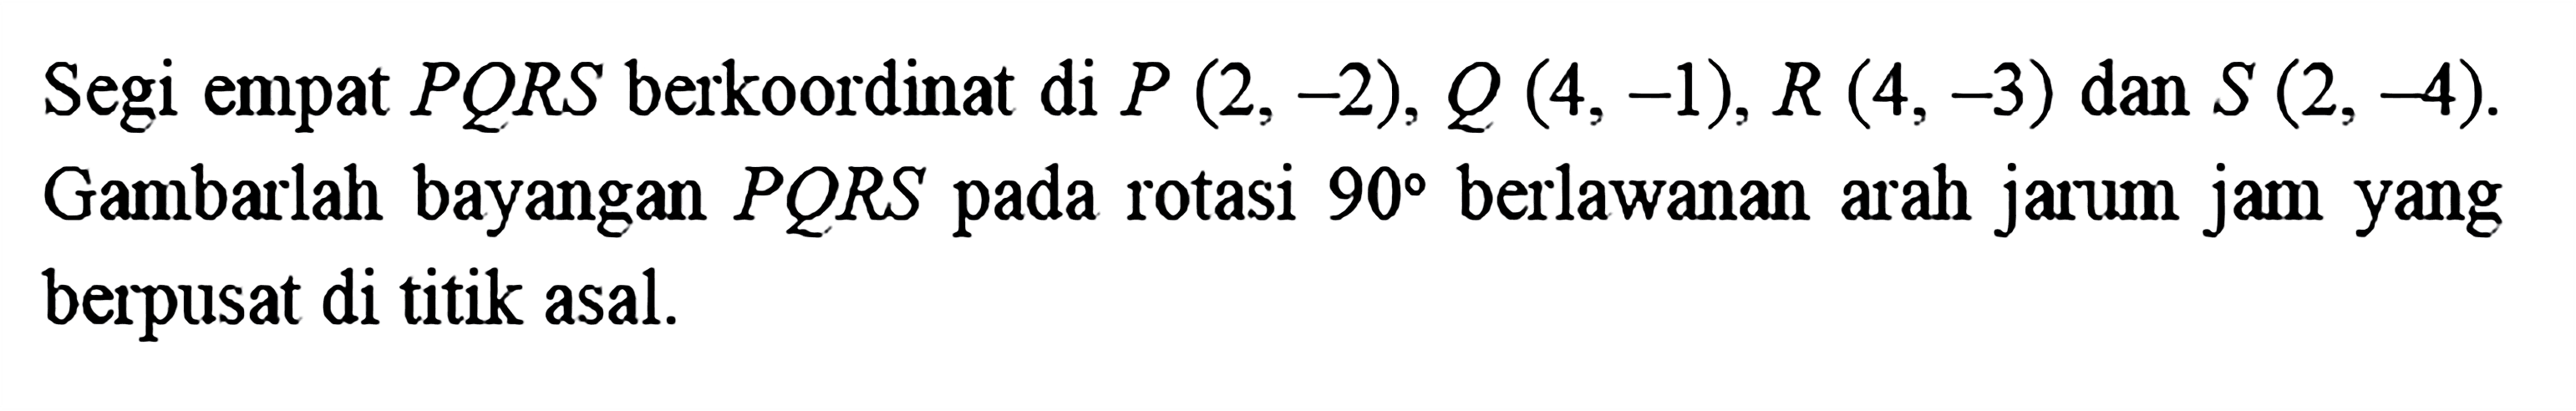 Segi empat PQRS berkoordinat di P(2,-2), Q(4,-1), R(4,-3) dan S(2,-4). Gambarlah bayangan PQRS pada rotasi 90 berlawanan arah jarum jam yang berpusat di titik asal.